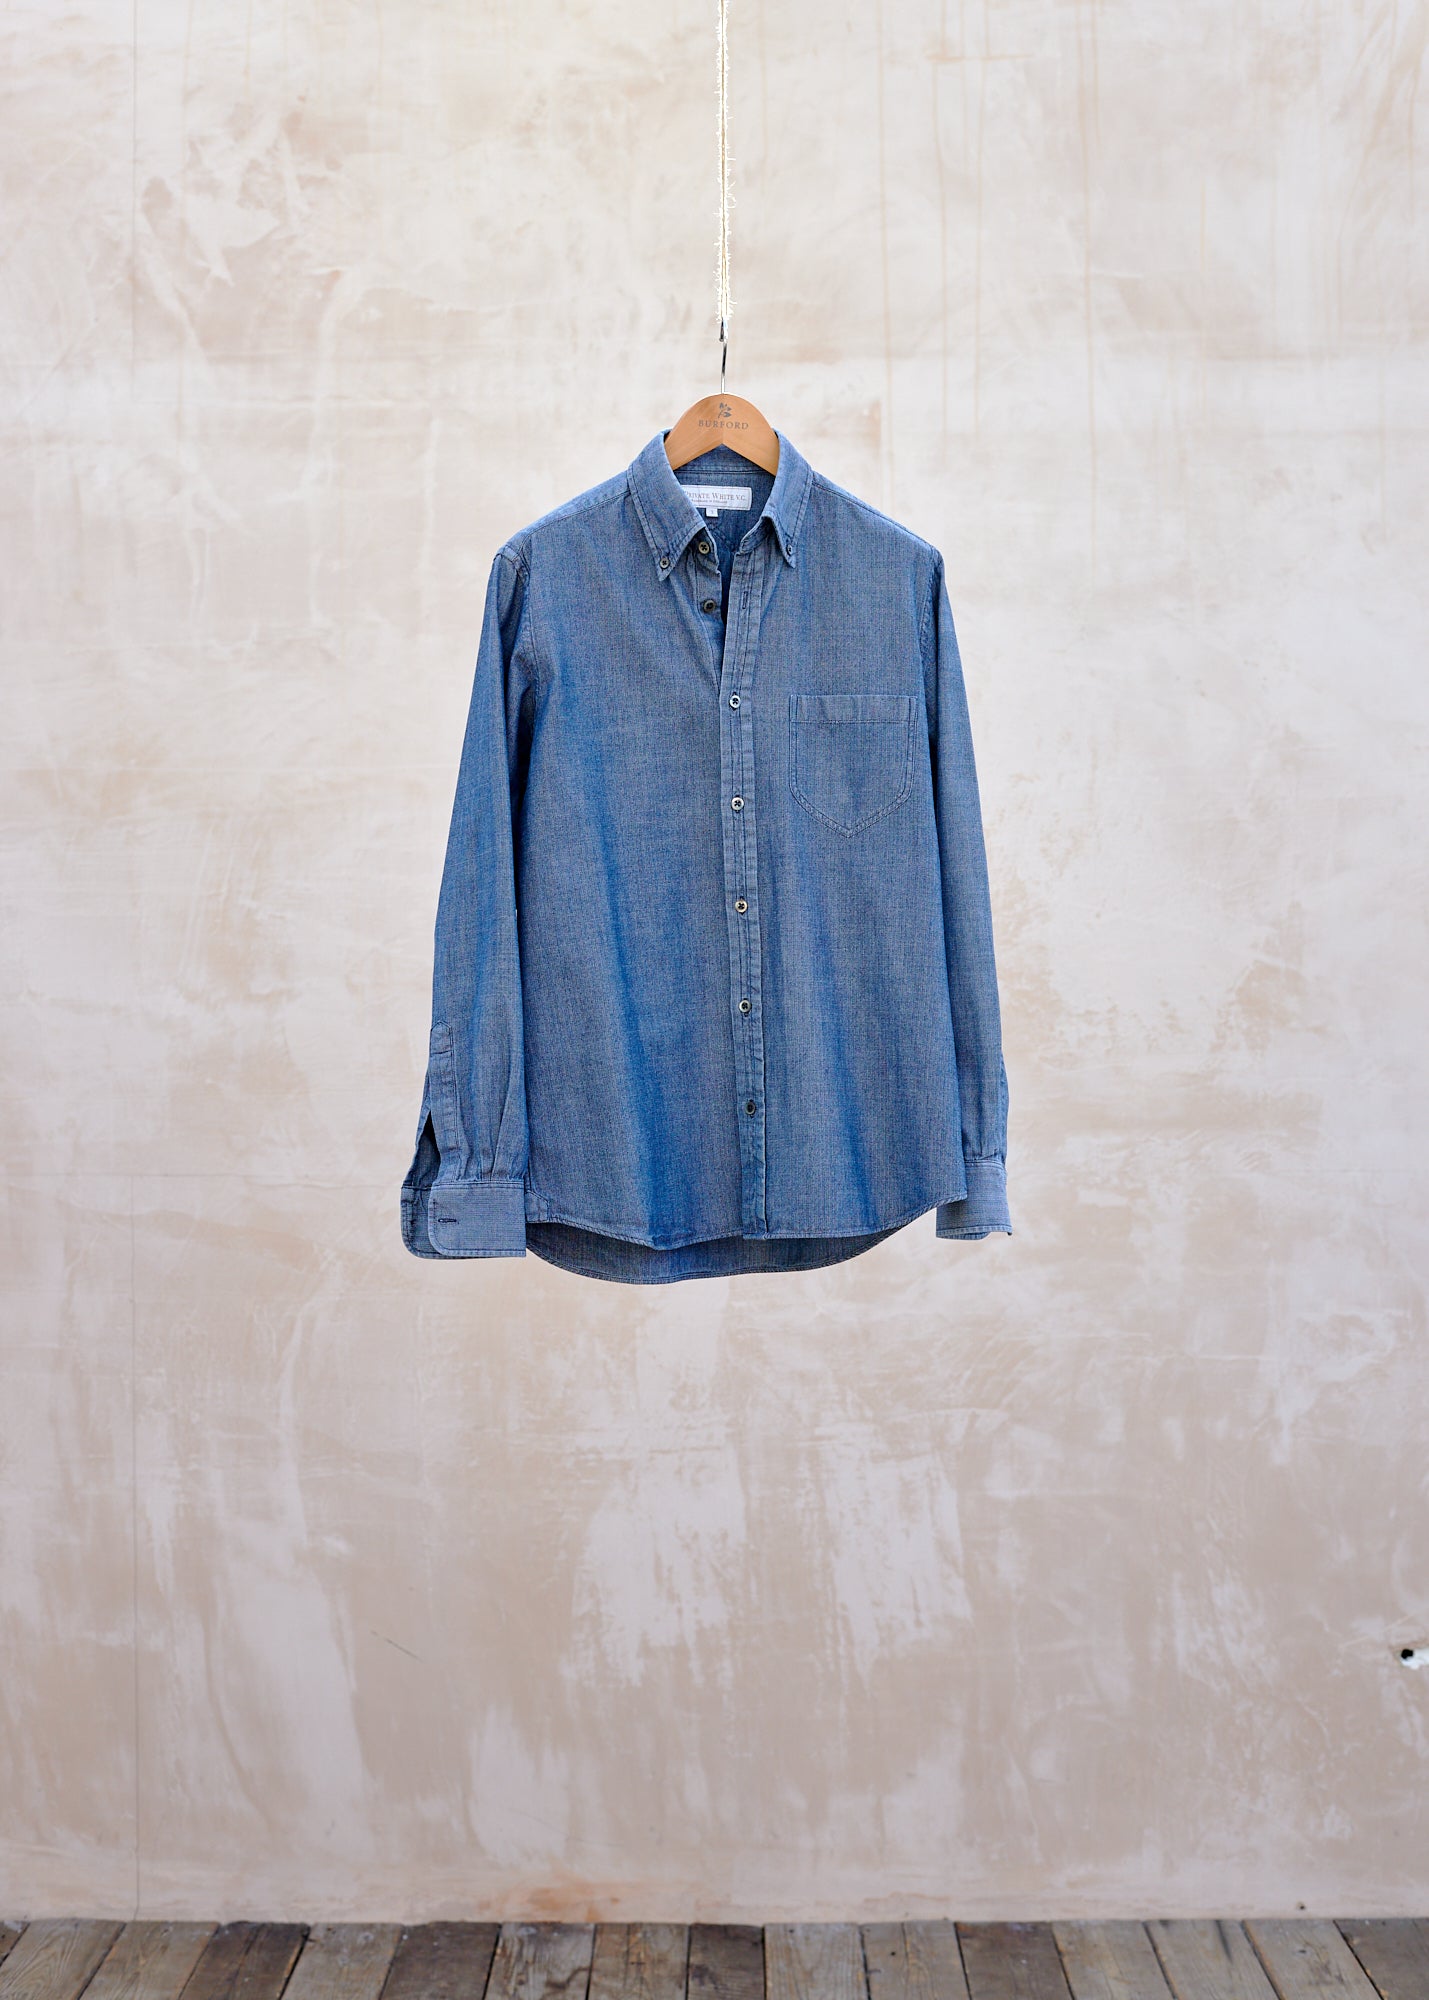 Private White V.C. Blue Tough Herringbone Cotton Shirt - S